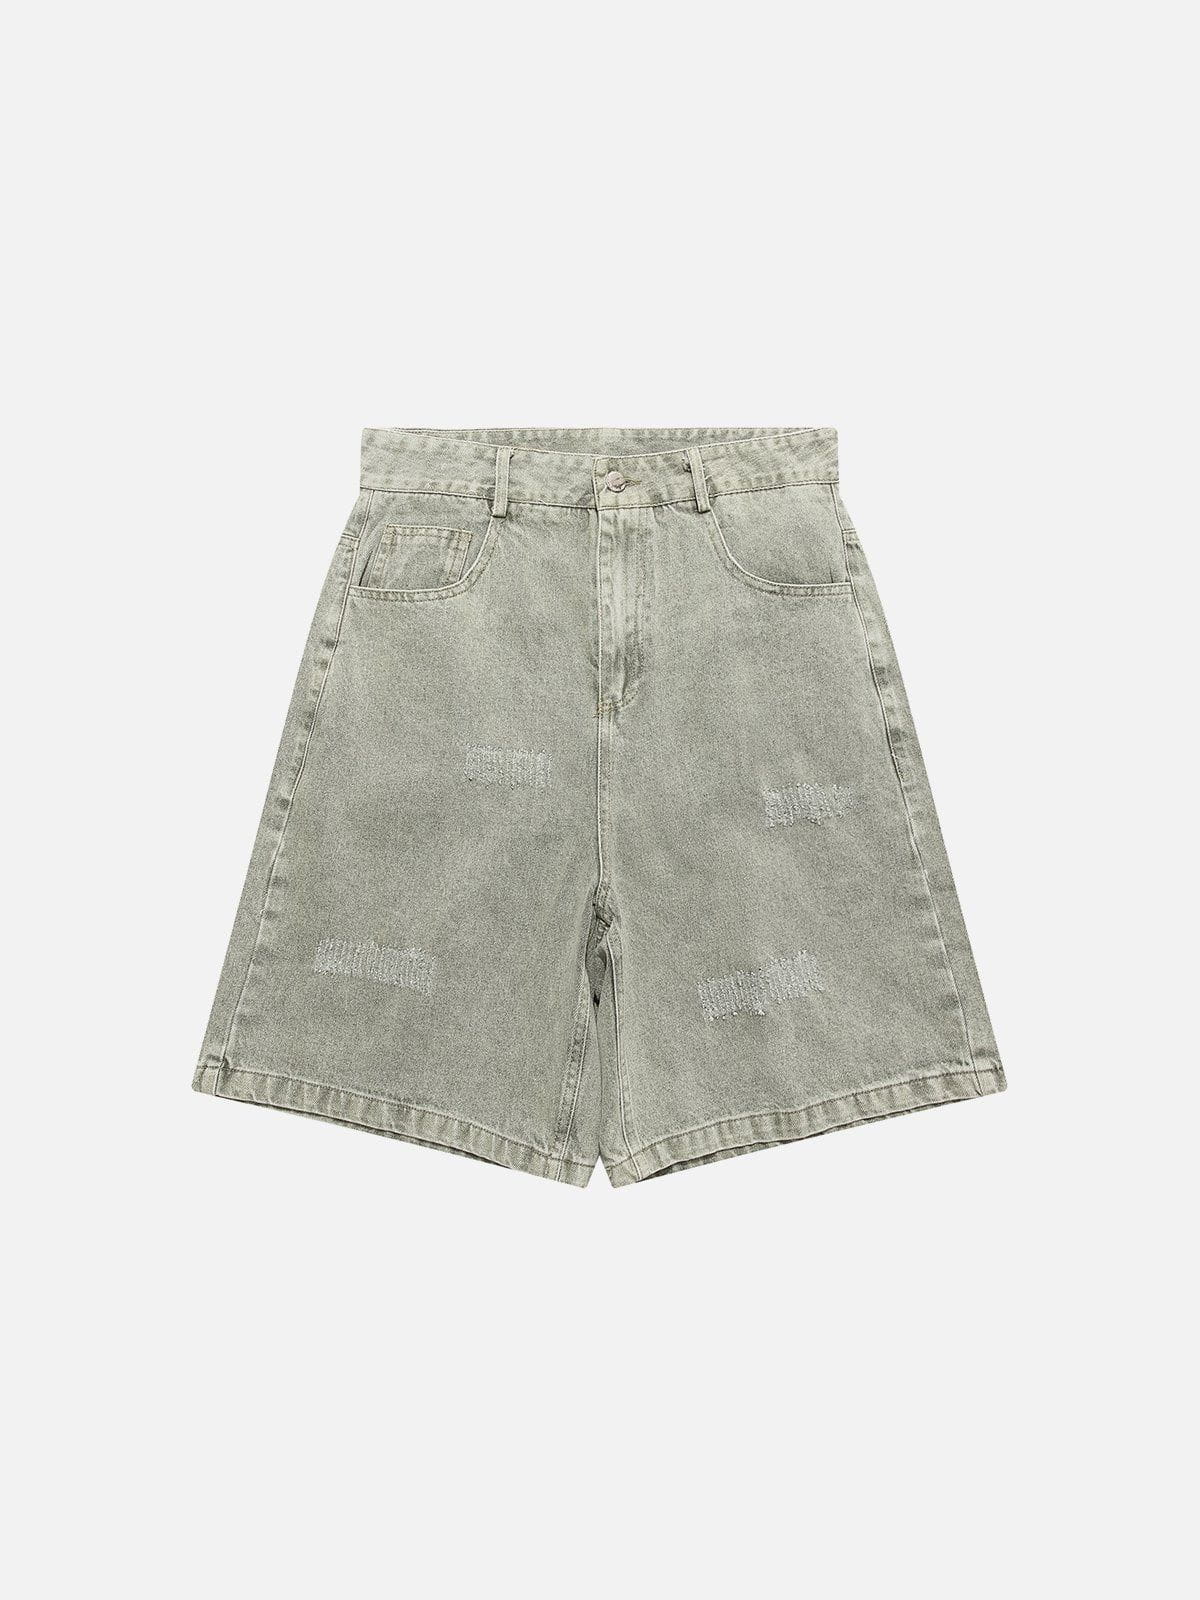 WLS Vintage Washed Shorts